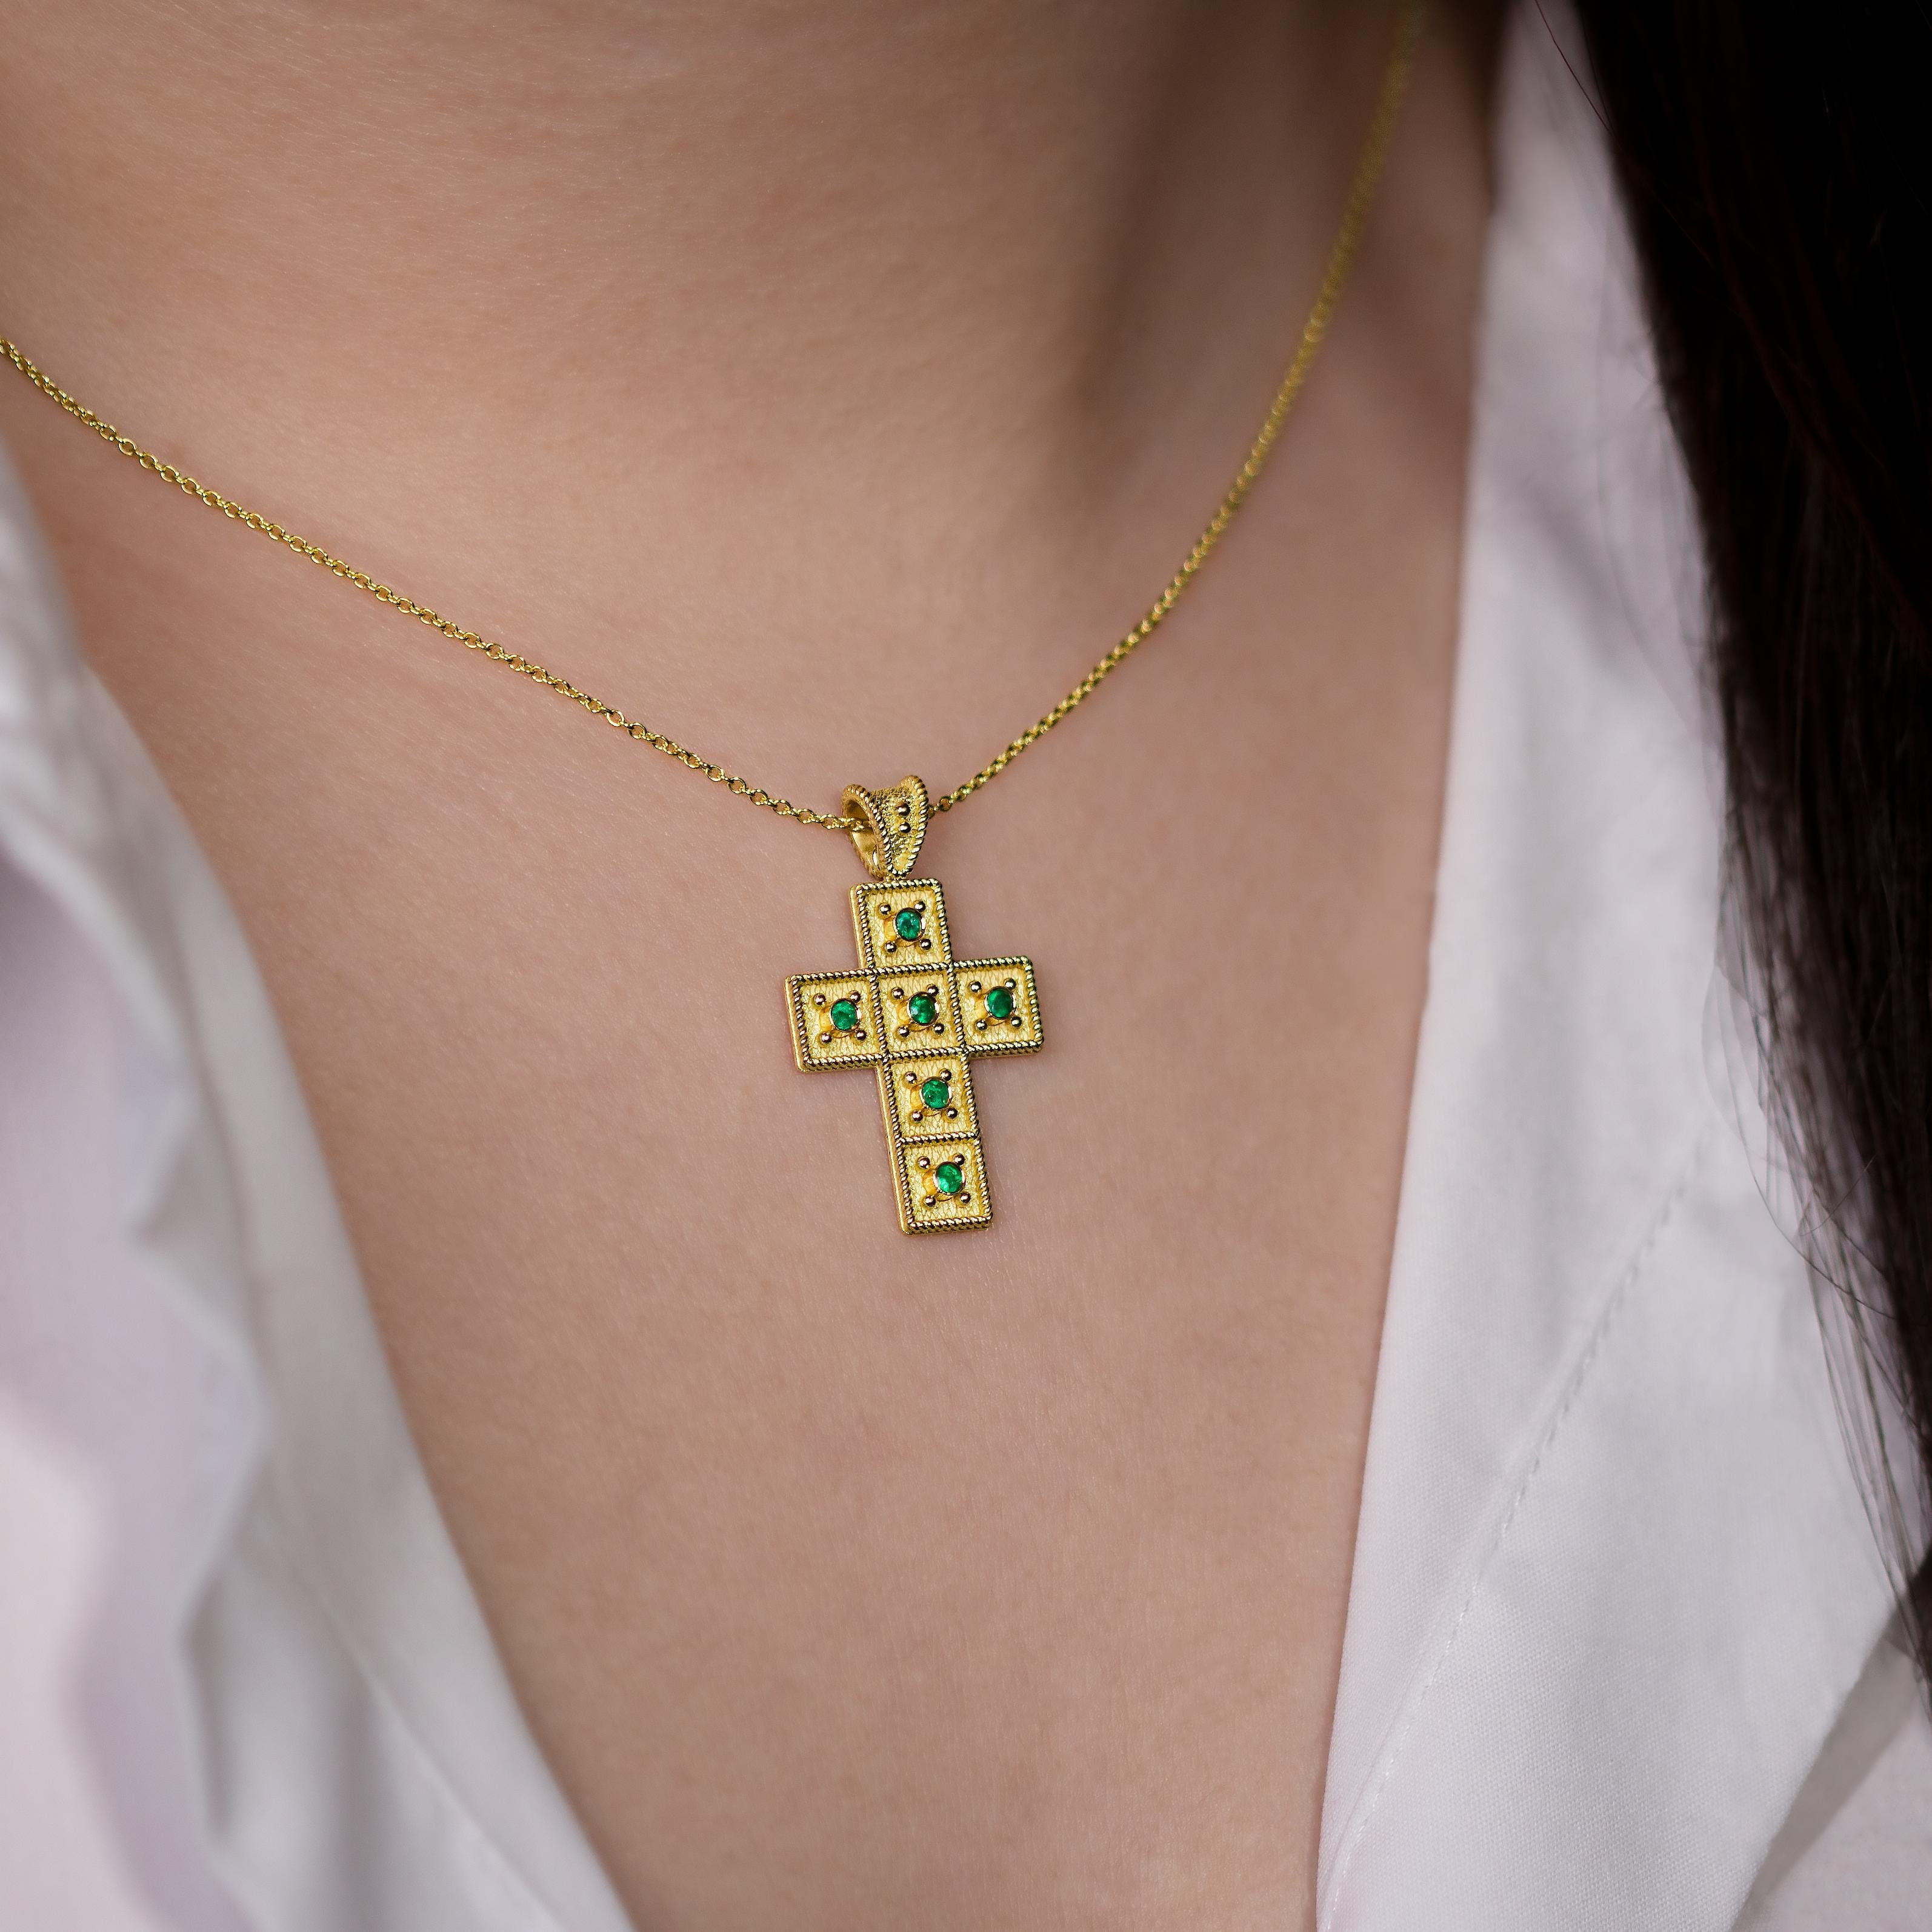 Ce pendentif croix en or est encadré d'une corde dorée complexe et gracieusement orné d'une constellation d'émeraudes étincelantes, formant un symbole de foi intemporelle et de charme opulent qui captive le cœur.

100% fait à la main dans notre